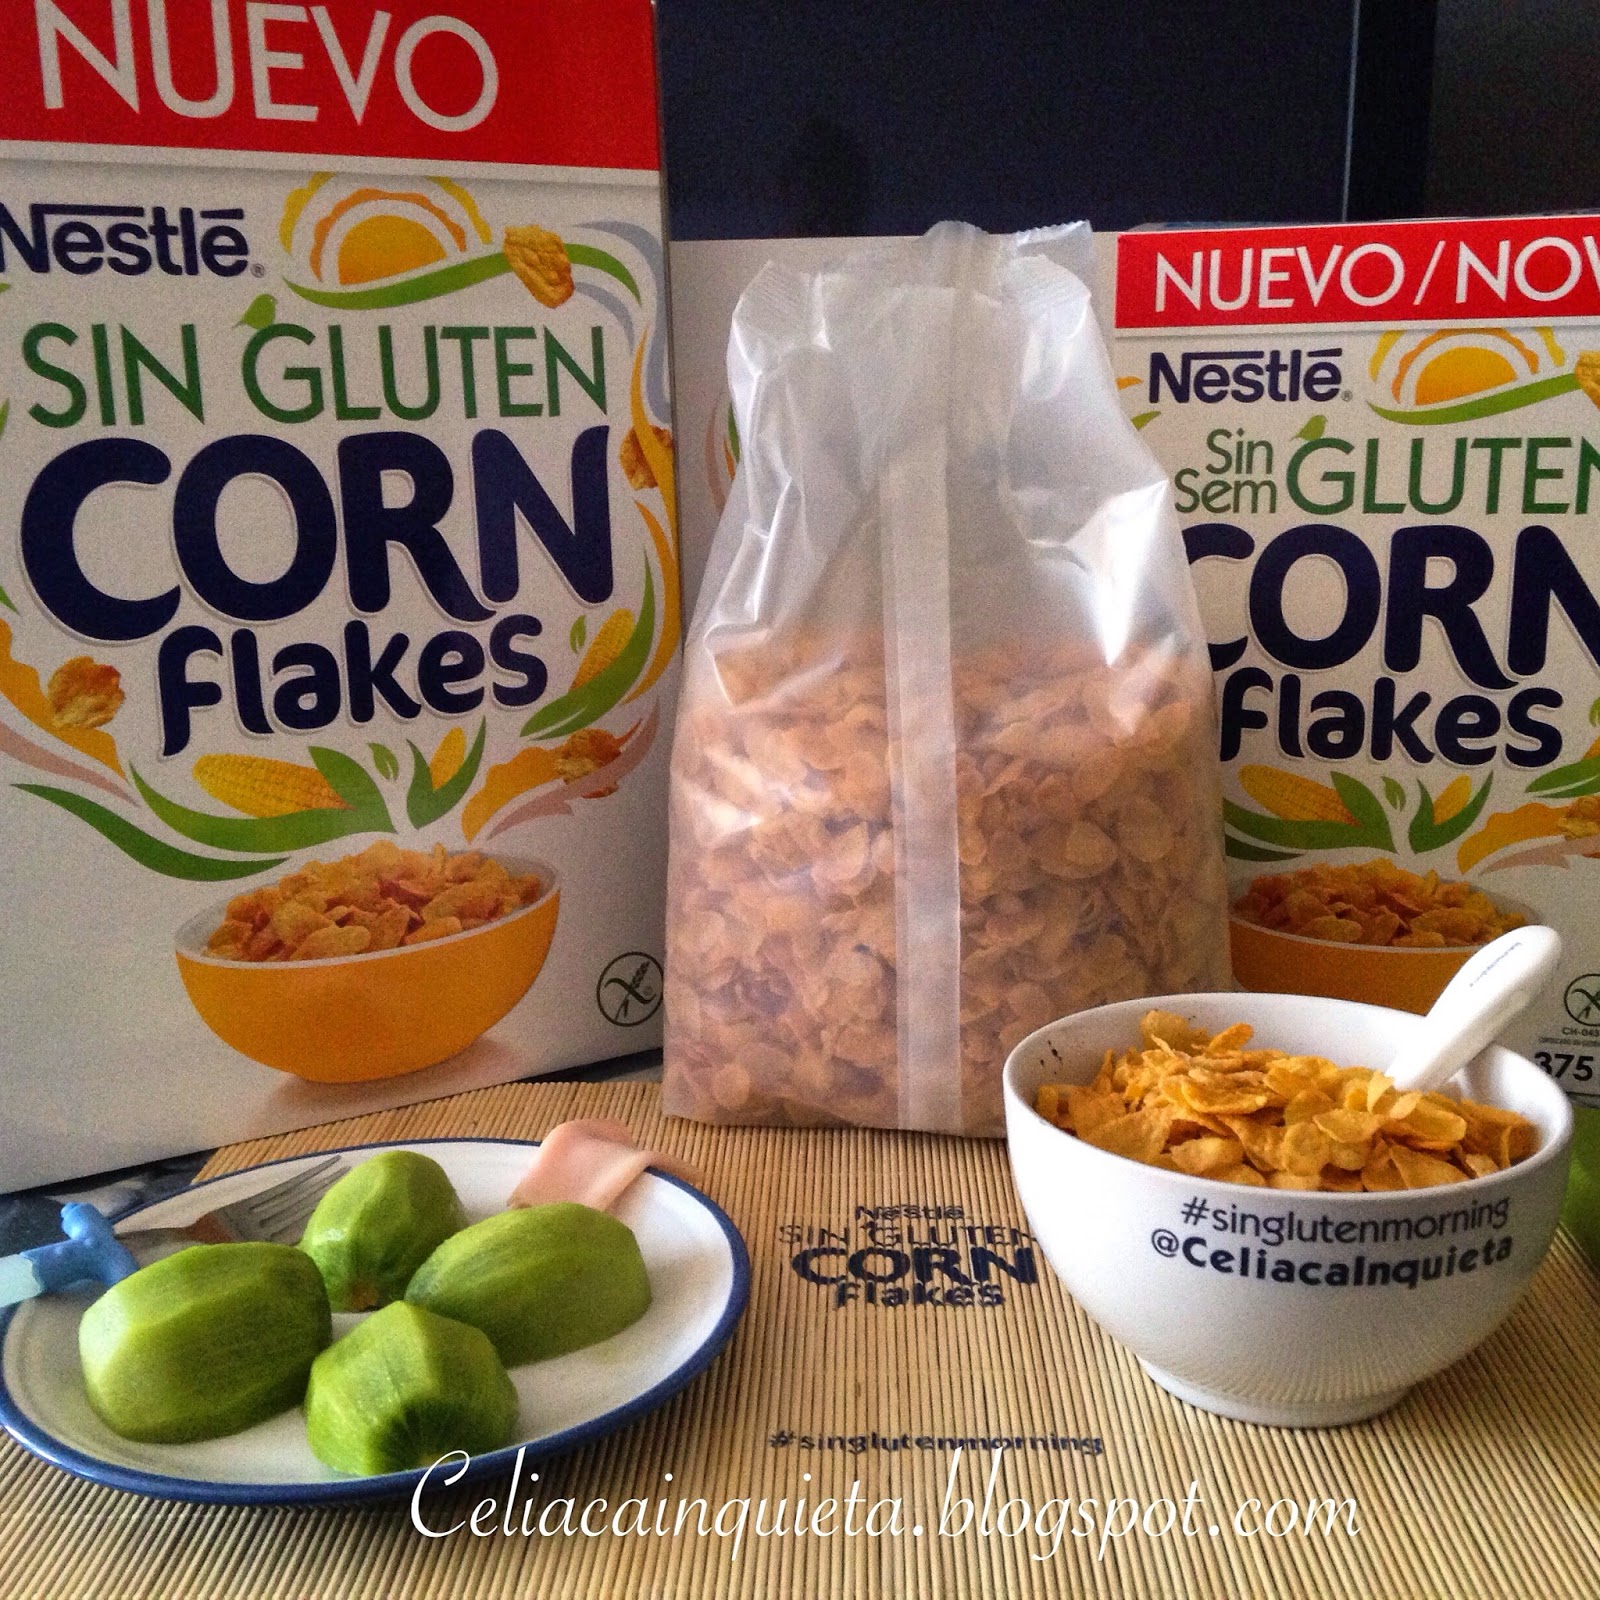 Los nuevos cereales Nesquik de Nestle, ahora sin gluten - Glutenacious Life